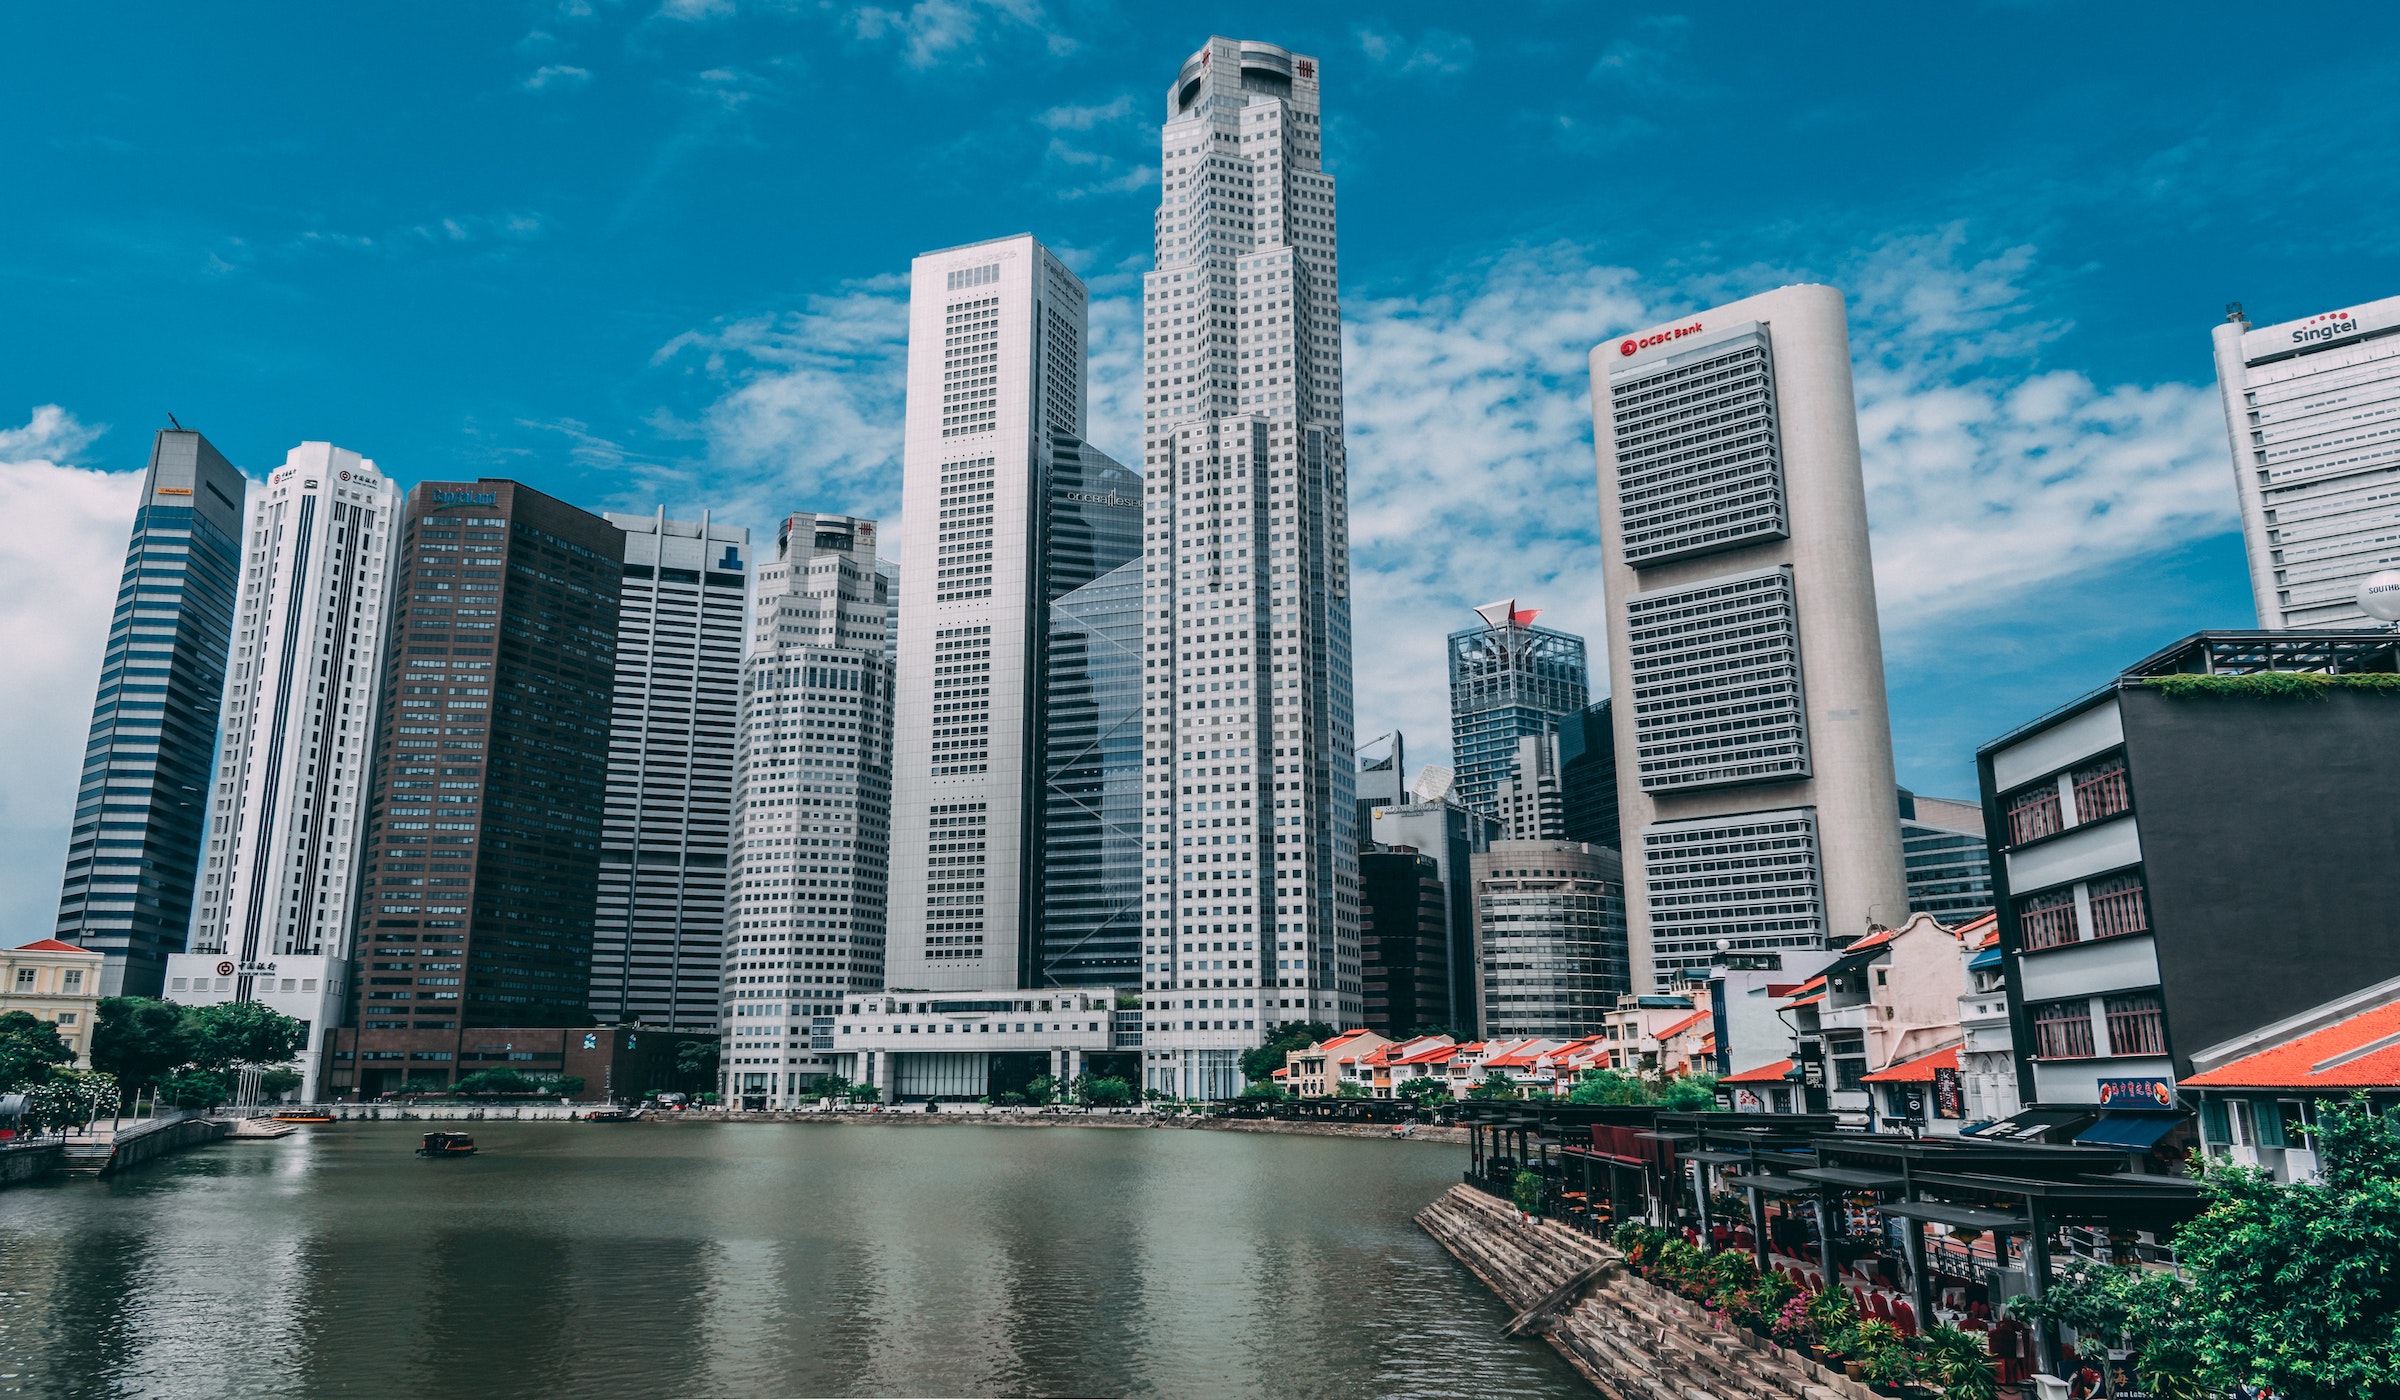 Singapore Skyline From Unsplash by Swapnil Bapal